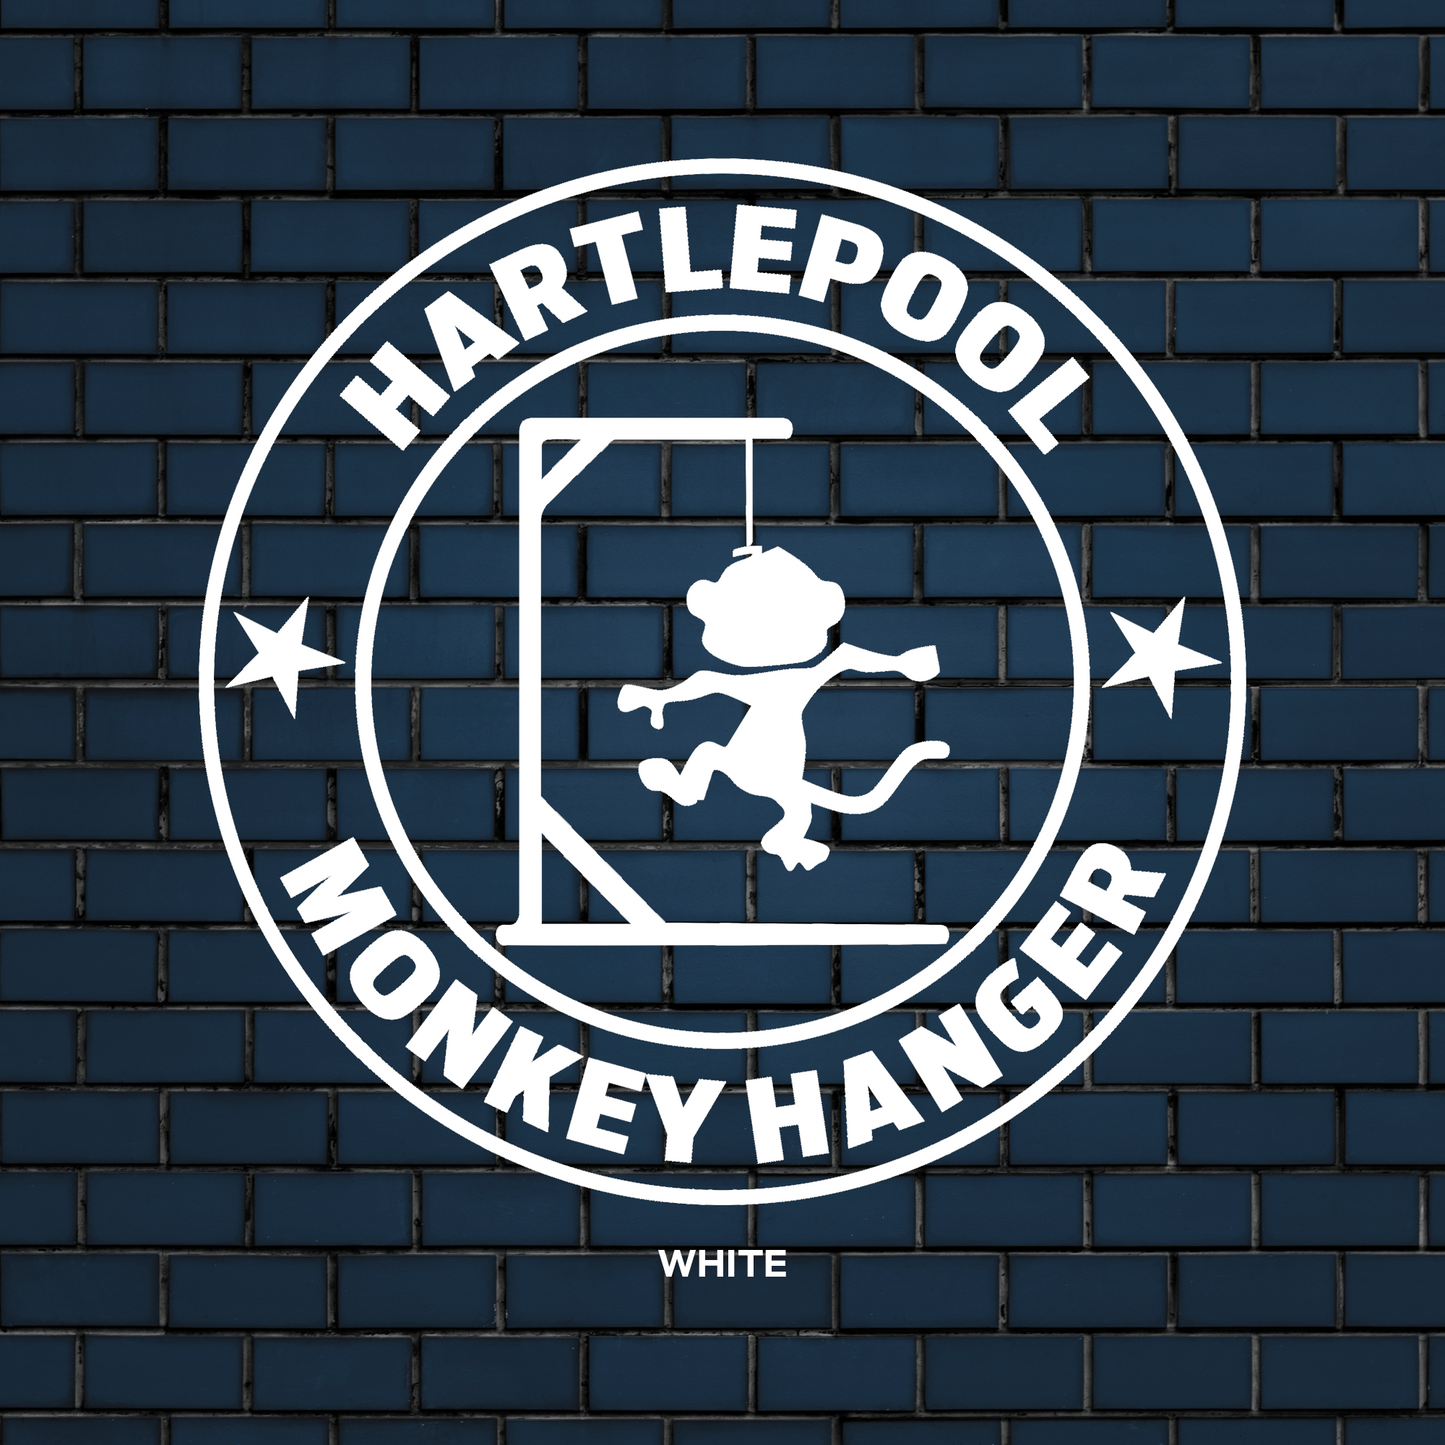 Hartlepool Monkey hanger decal